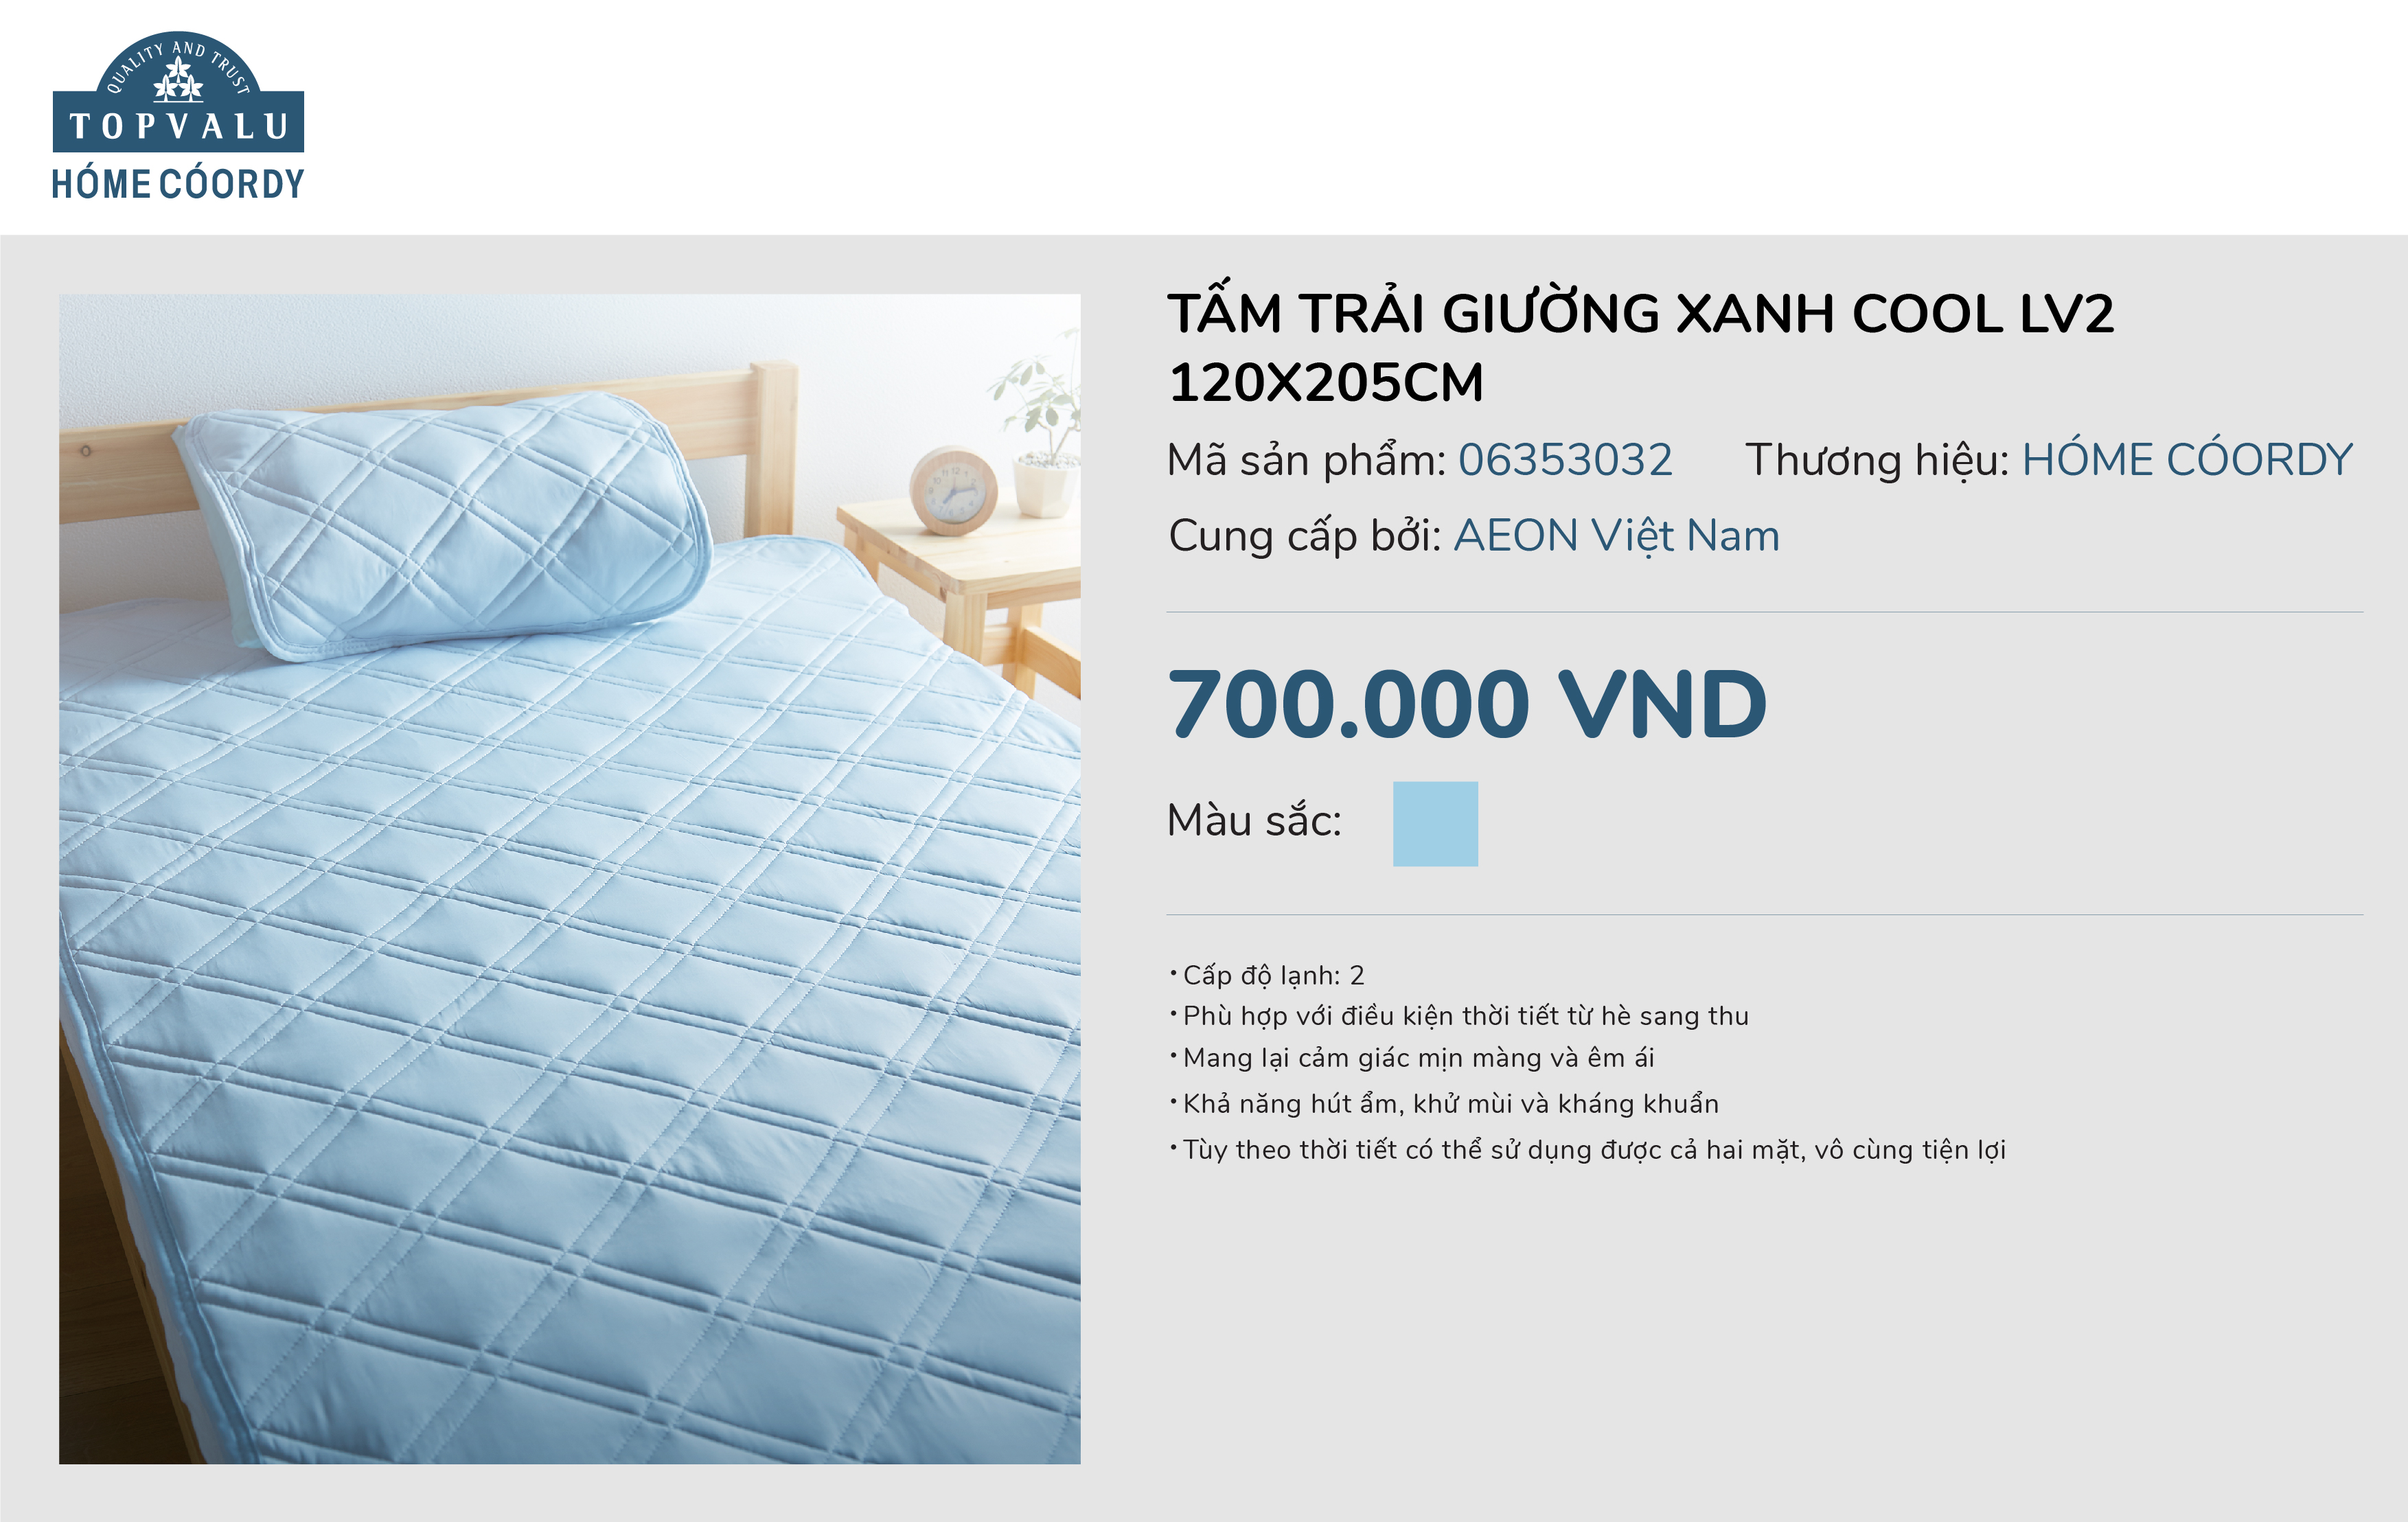 Tấm trải giường xanh cool lv2 120x205cm